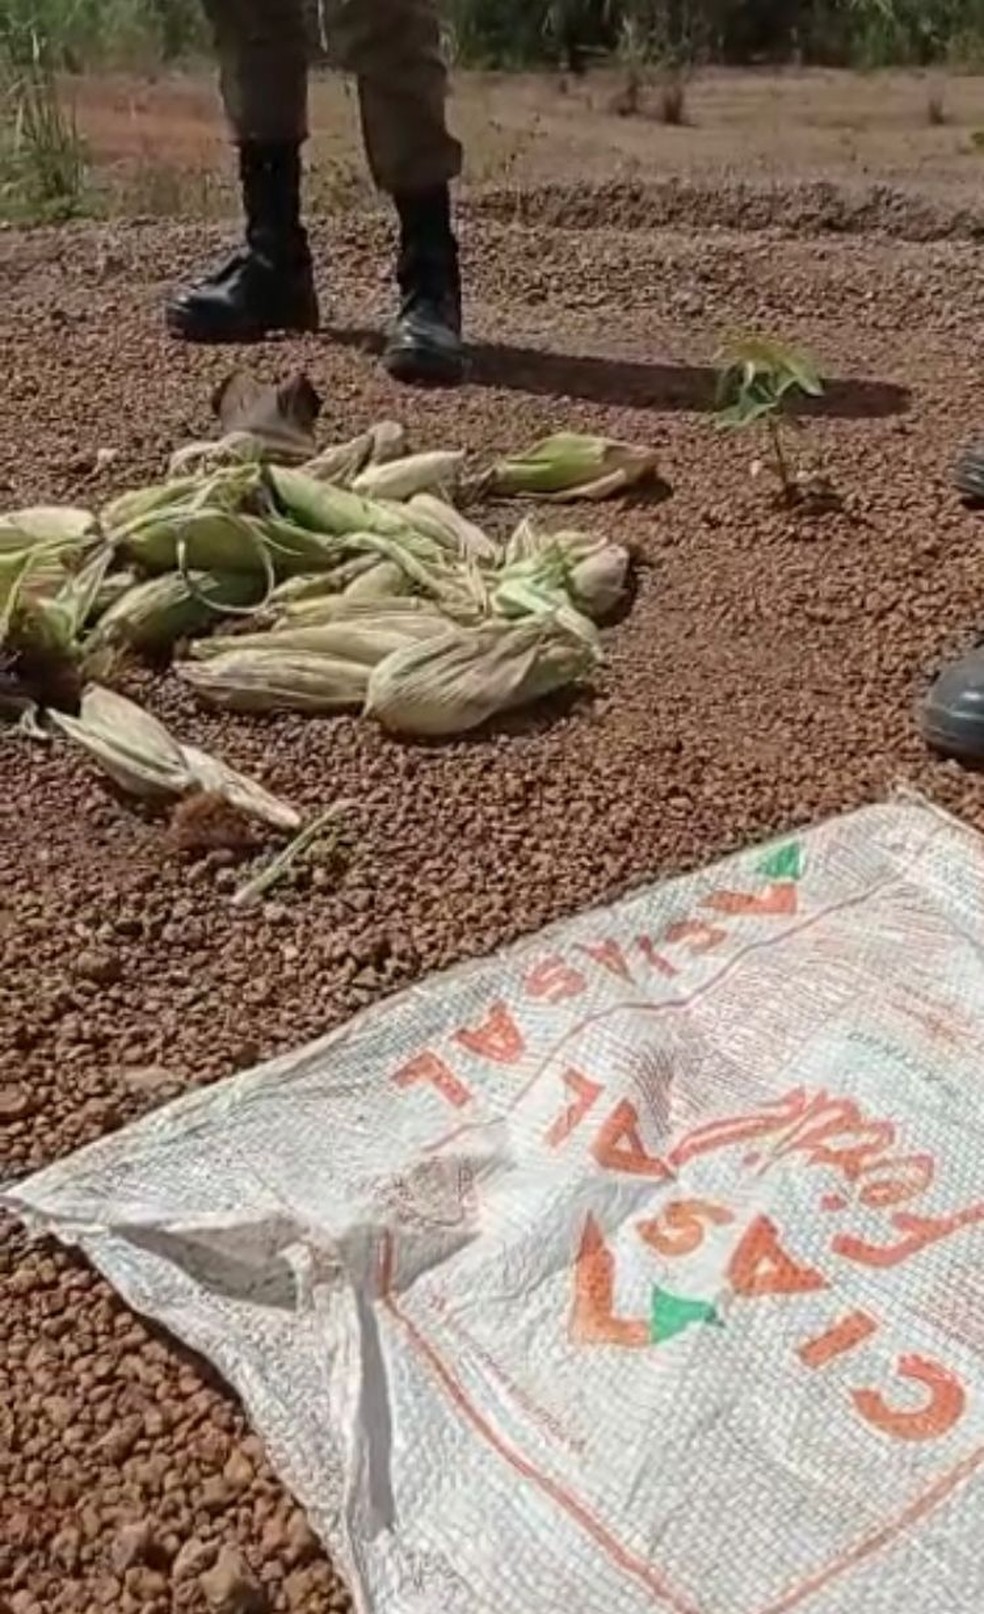 Criminosos estariam se alimentando de espigas de milho, diz PM — Foto: Divulgação